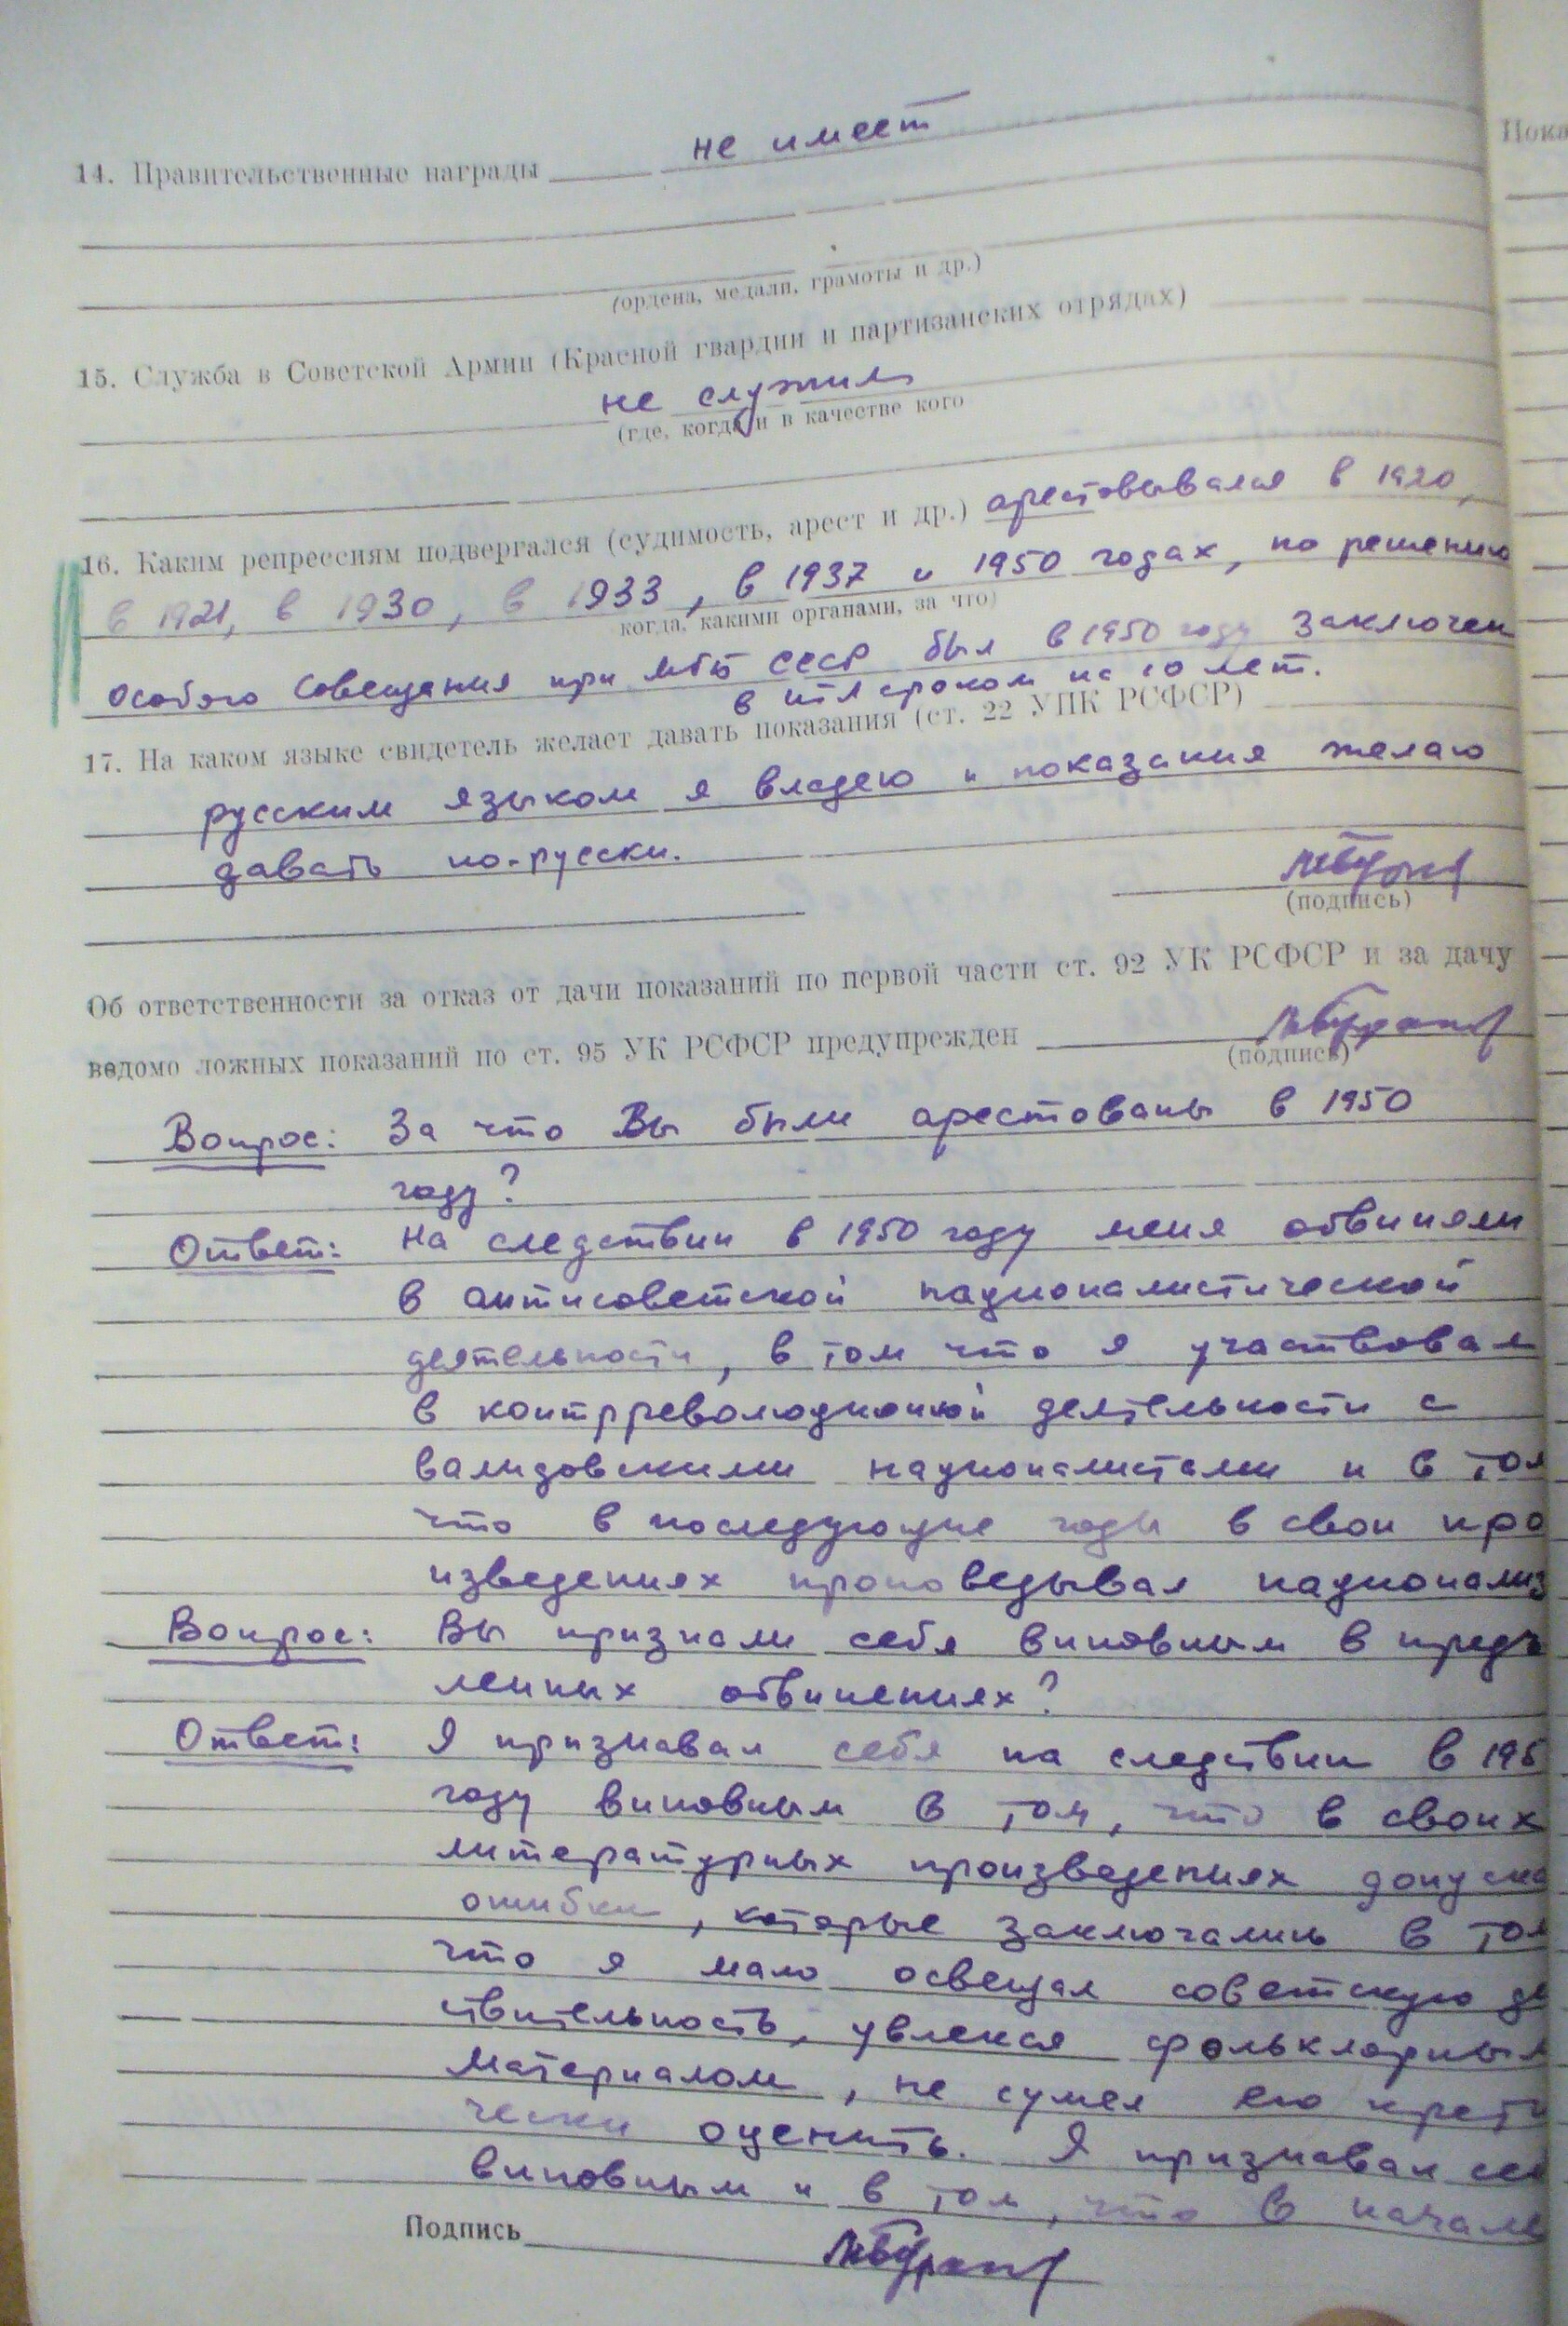 Первые страницы передопроса Мухаметши Бурангулова (13 ноября 1956 г.).